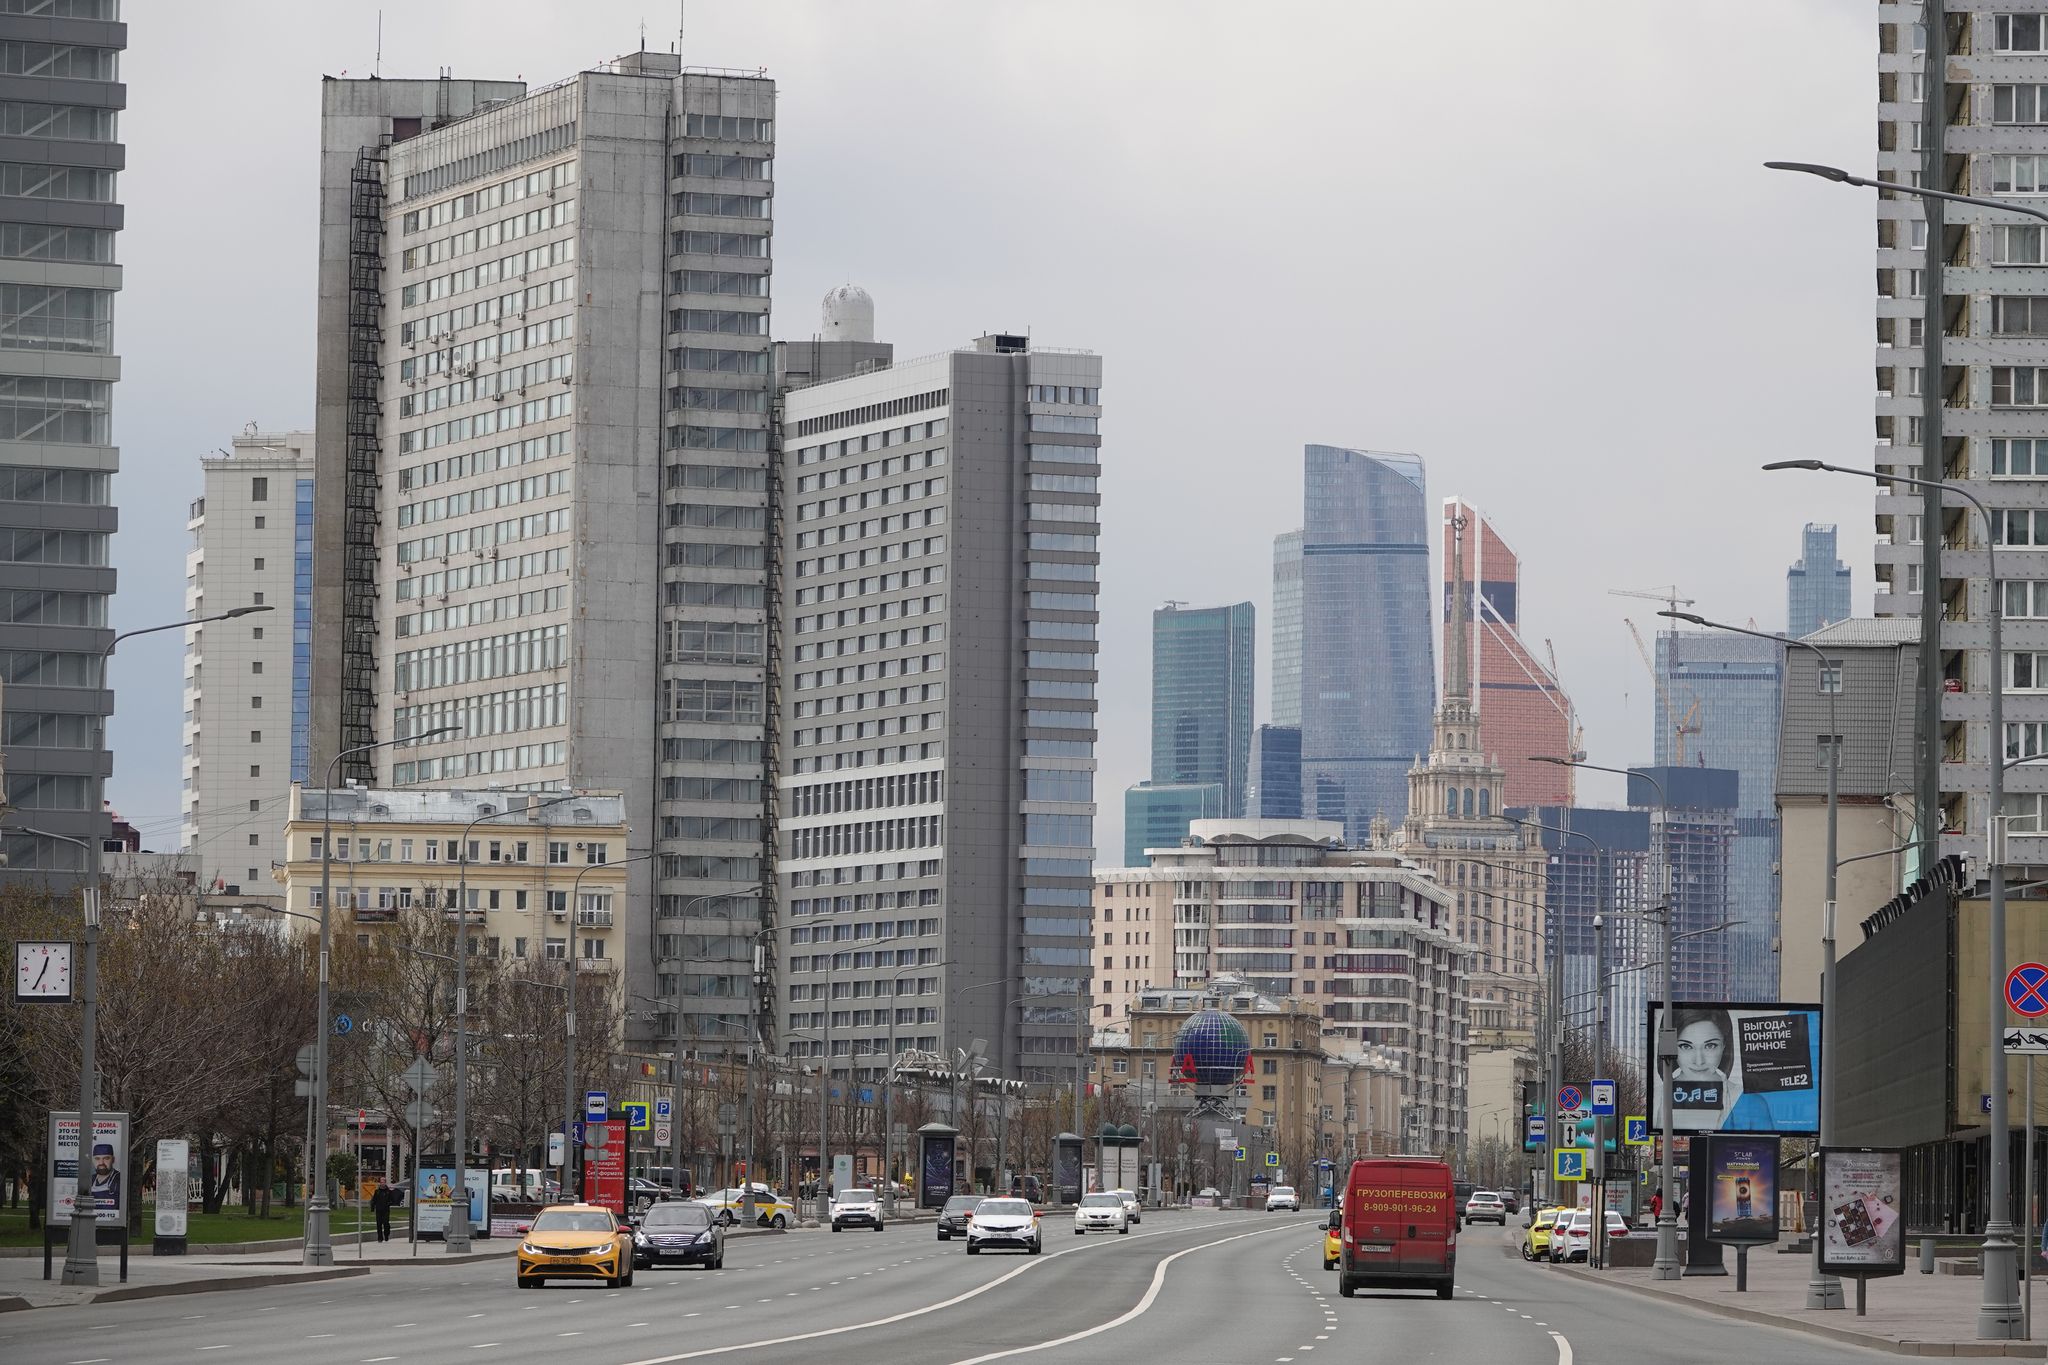 Prominente Ökonomin stirbt bei Fenstersturz in Moskau